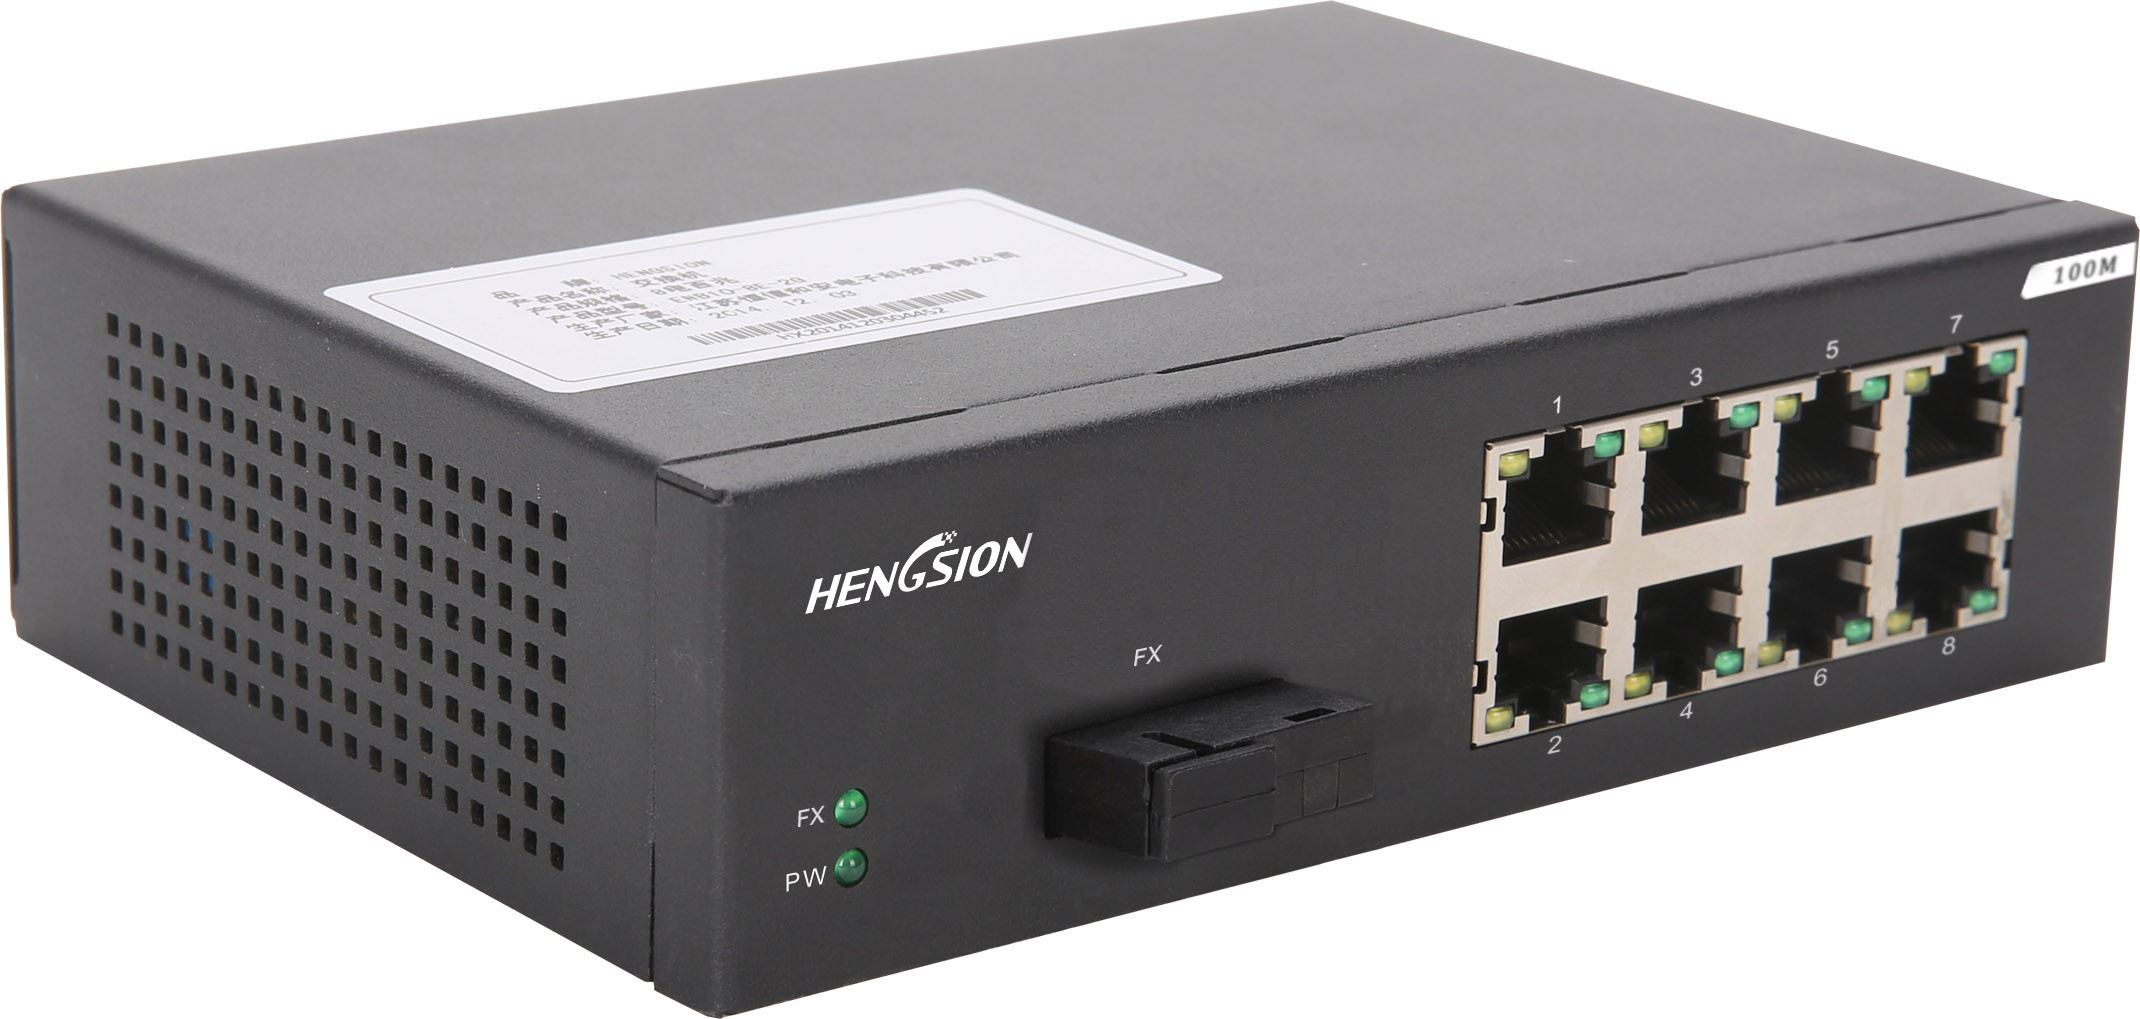 Порт 10/100base-TX. Медиаконвертер промышленный Gigabit Ethernet 10/100/100base-TX. Порта 100m/Gigabit SFP. Сетевой коммутатор 6 порта 10/100/100 Base 2/4 SFP.